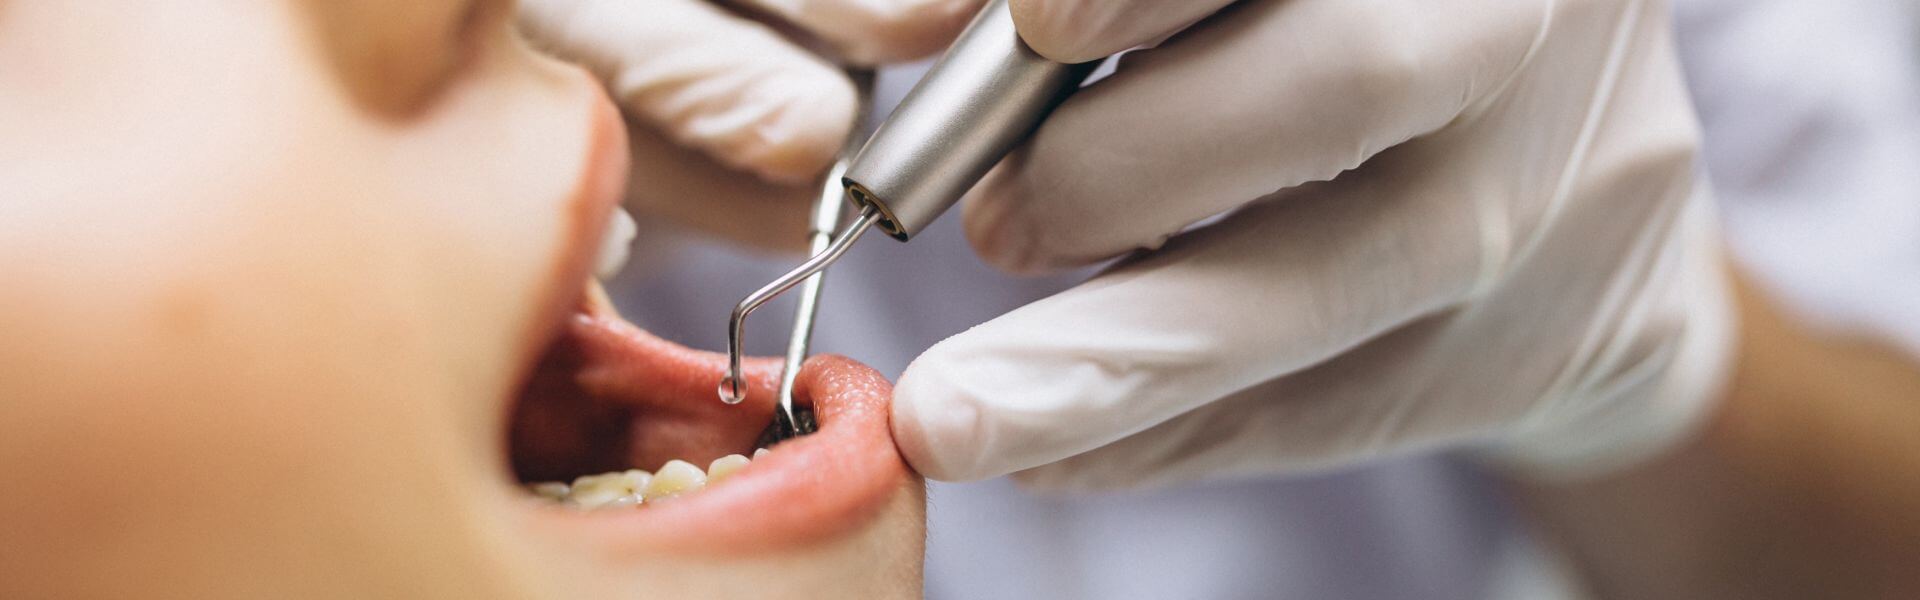 implanty zębowe cała szczęka cena